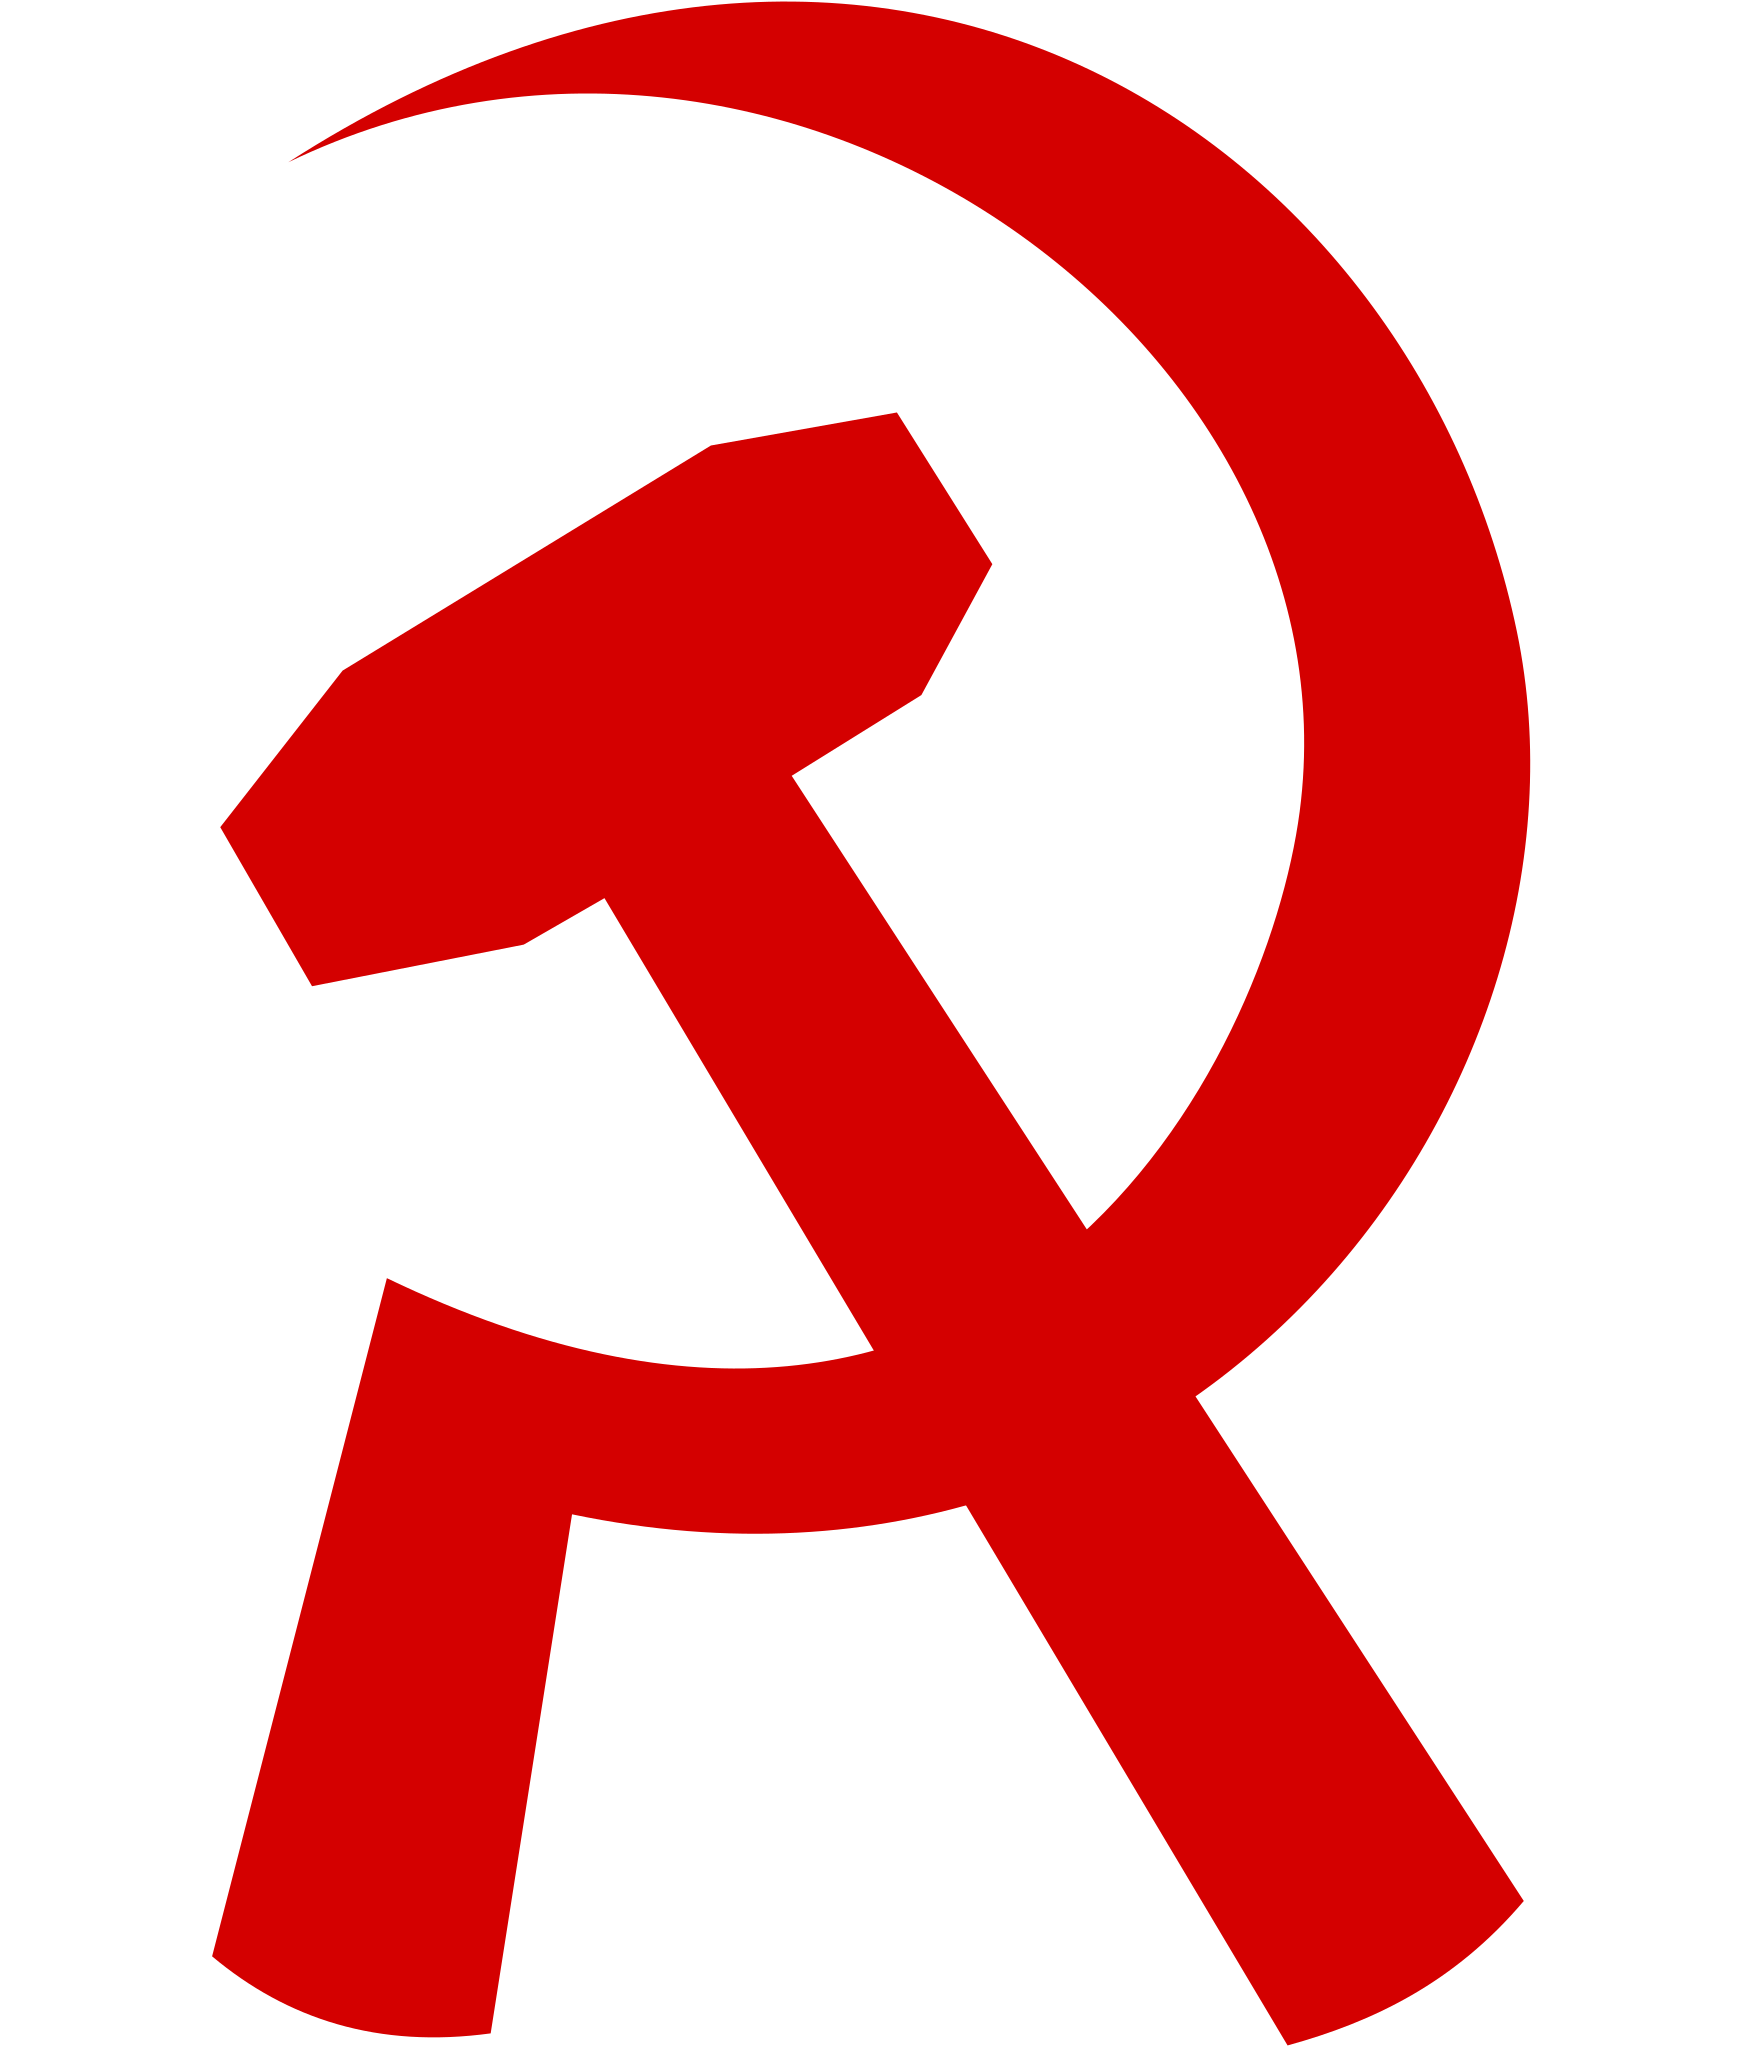 socialist.net